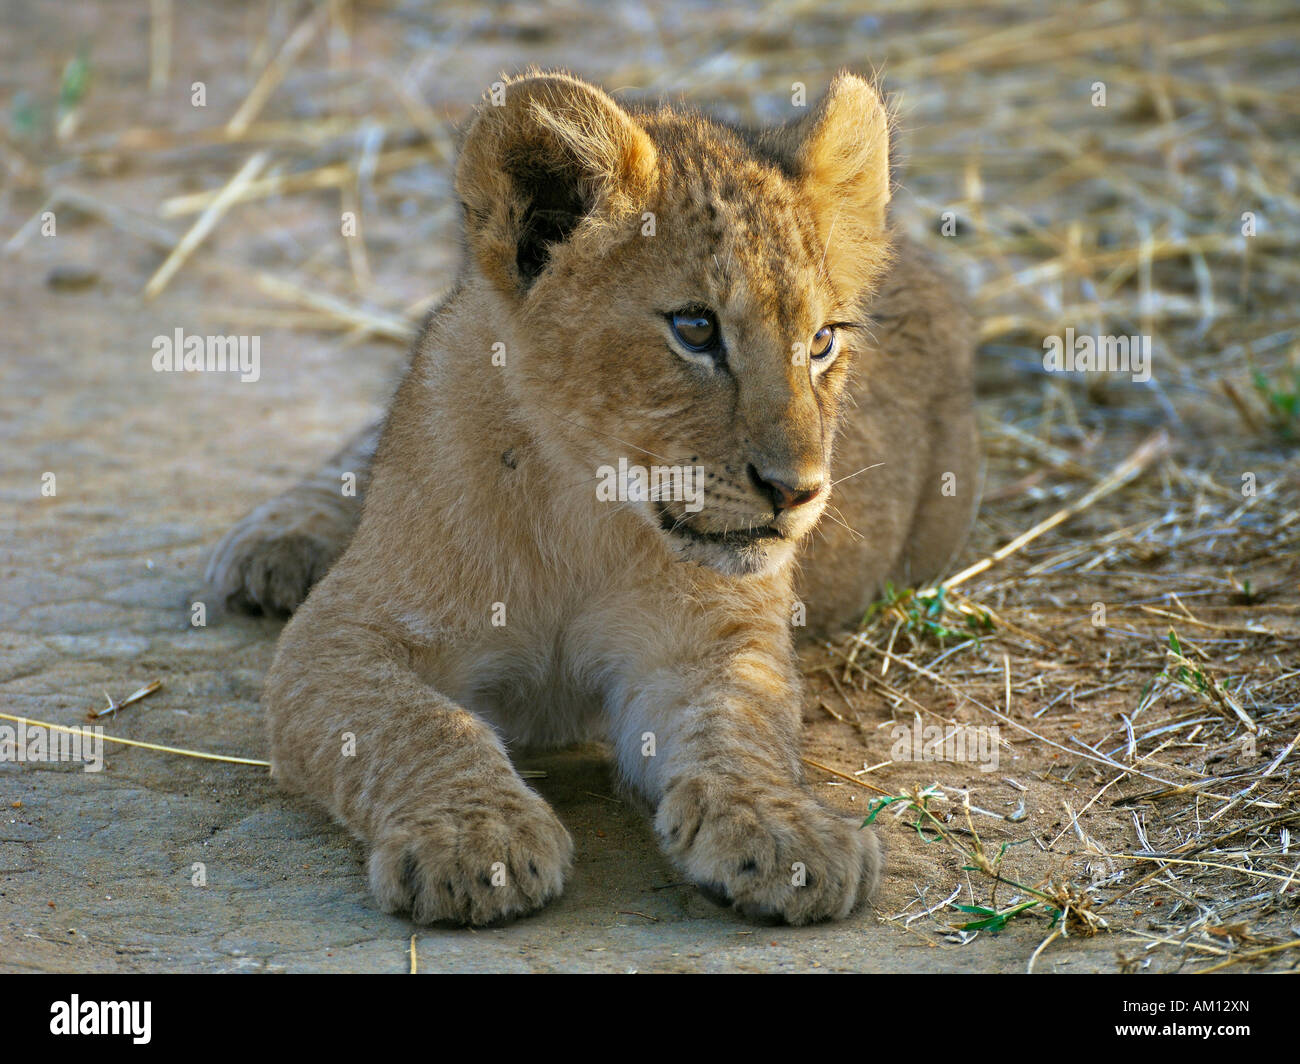 Lion (Panthera leo), cub, Masai Mara, Kenya Stock Photo